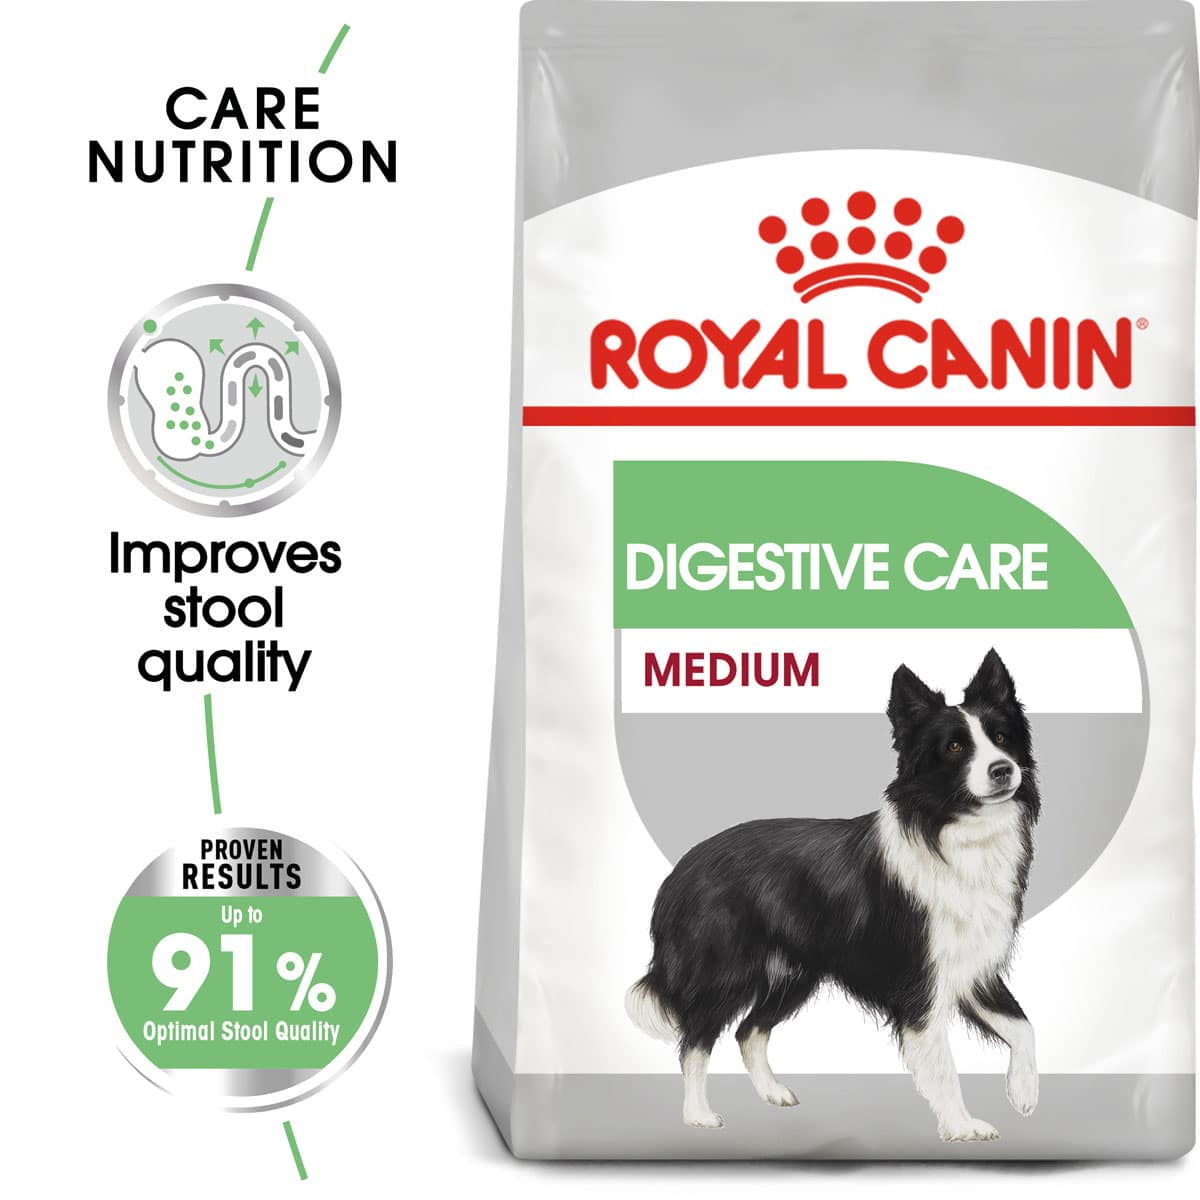 ROYAL CANIN DIGESTIVE CARE MEDIUM Trockenfutter für mittelgroße Hunde mit emfindlicher Verdauung 3kg